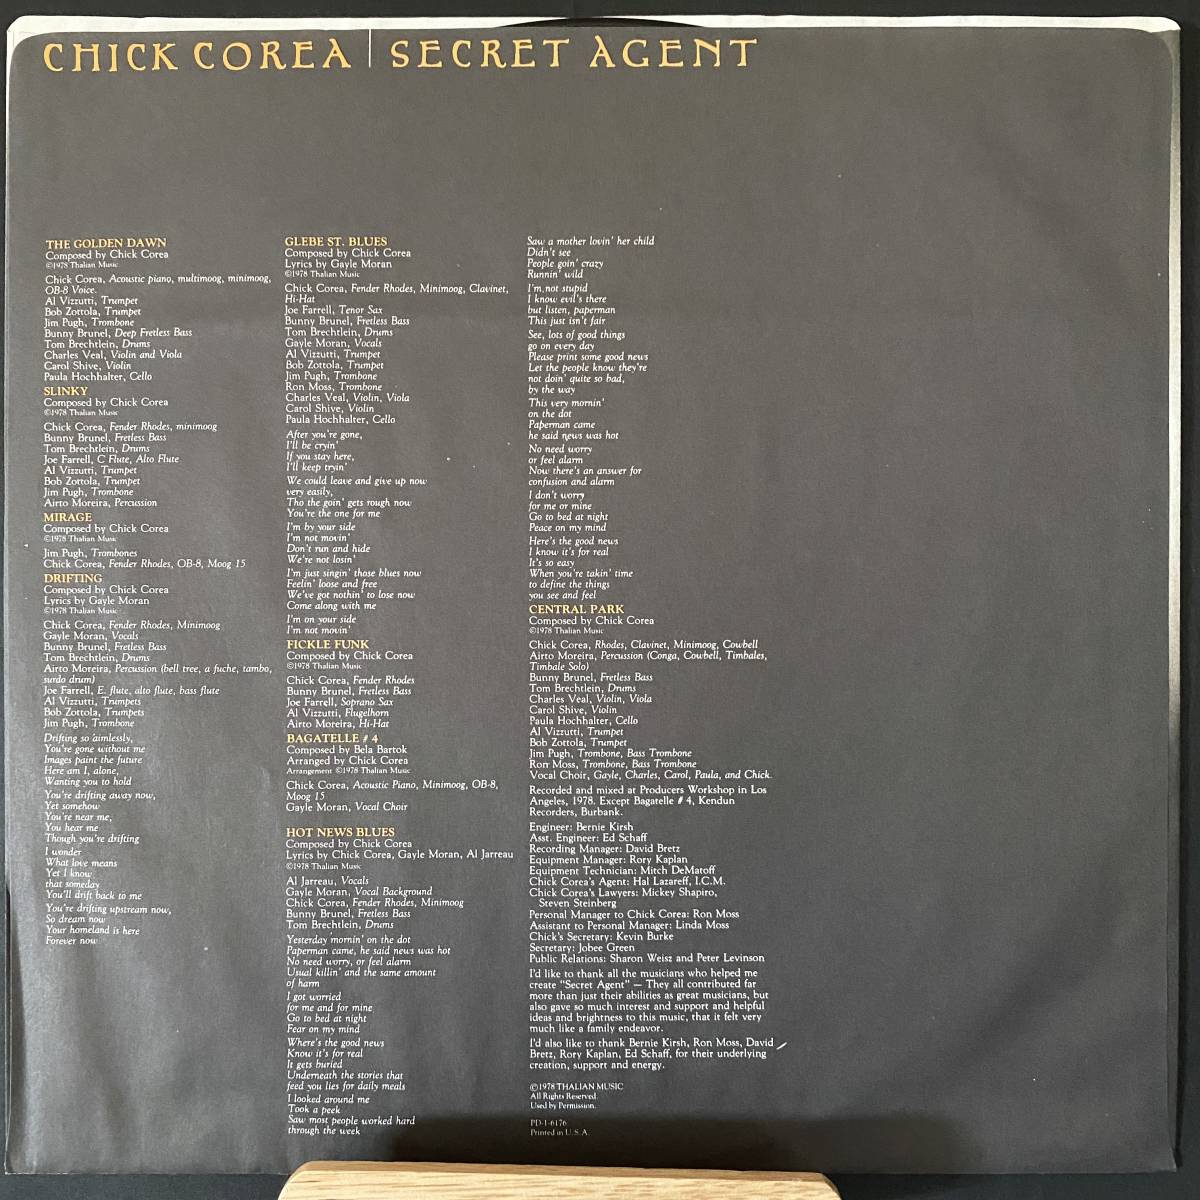 LP CHICK COREA|SECRET AGENT